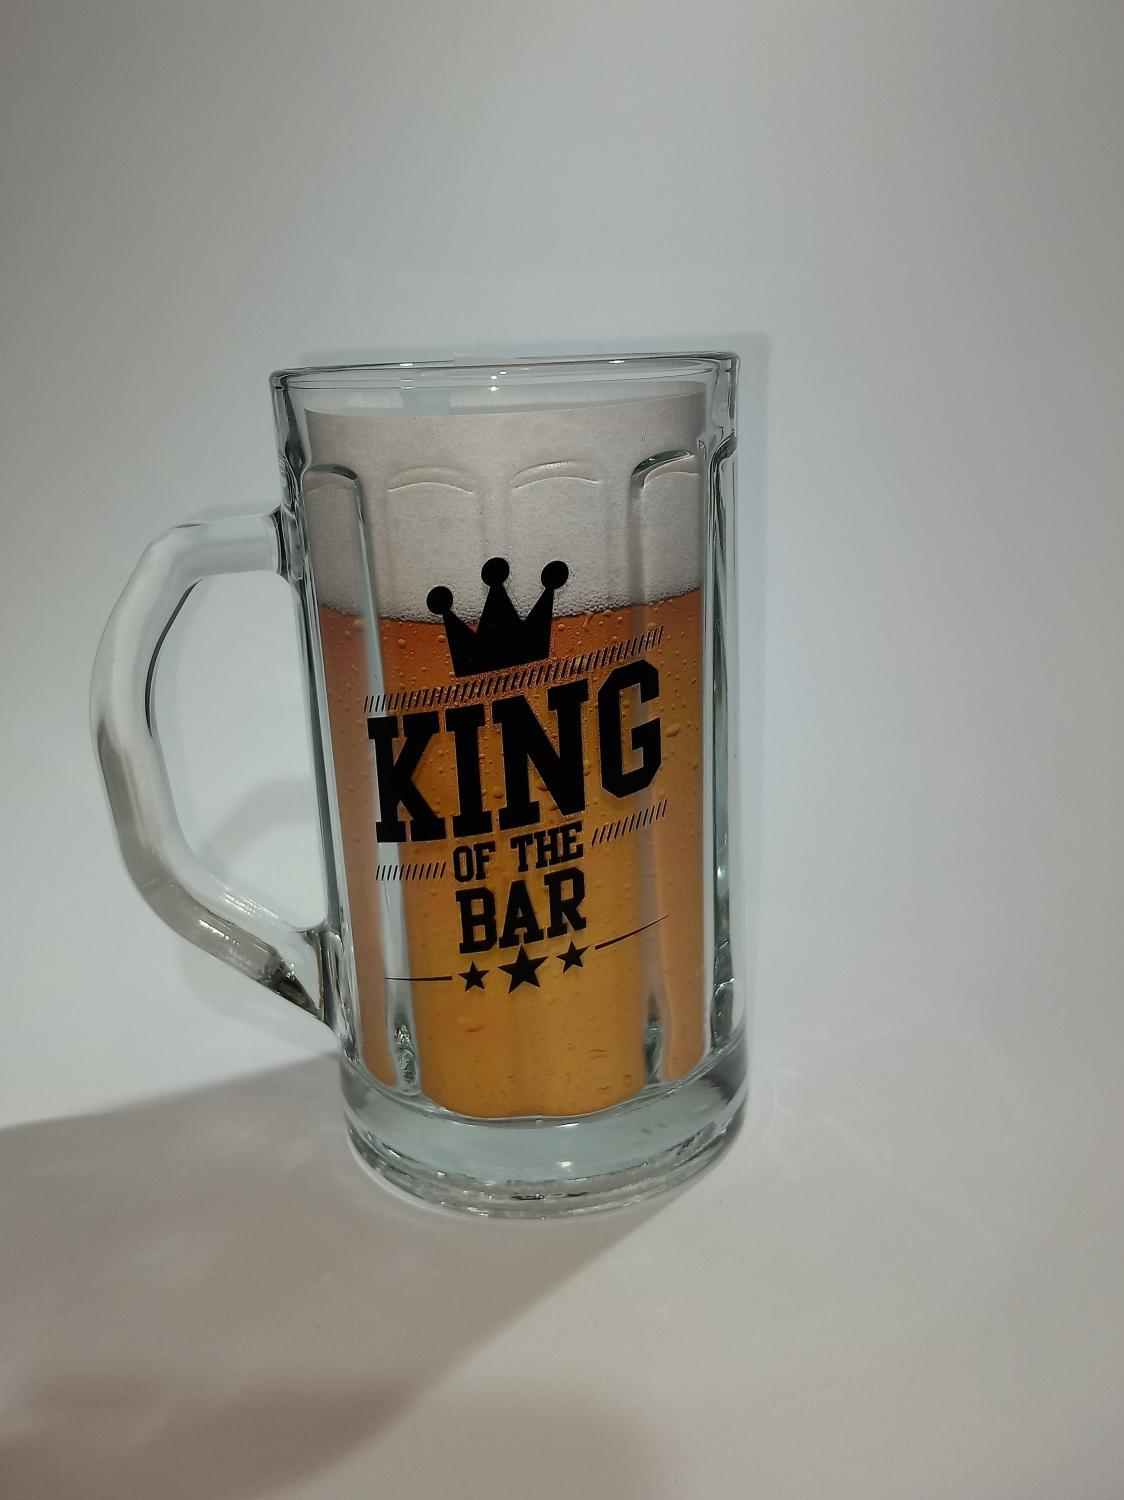 King of the bar - mug